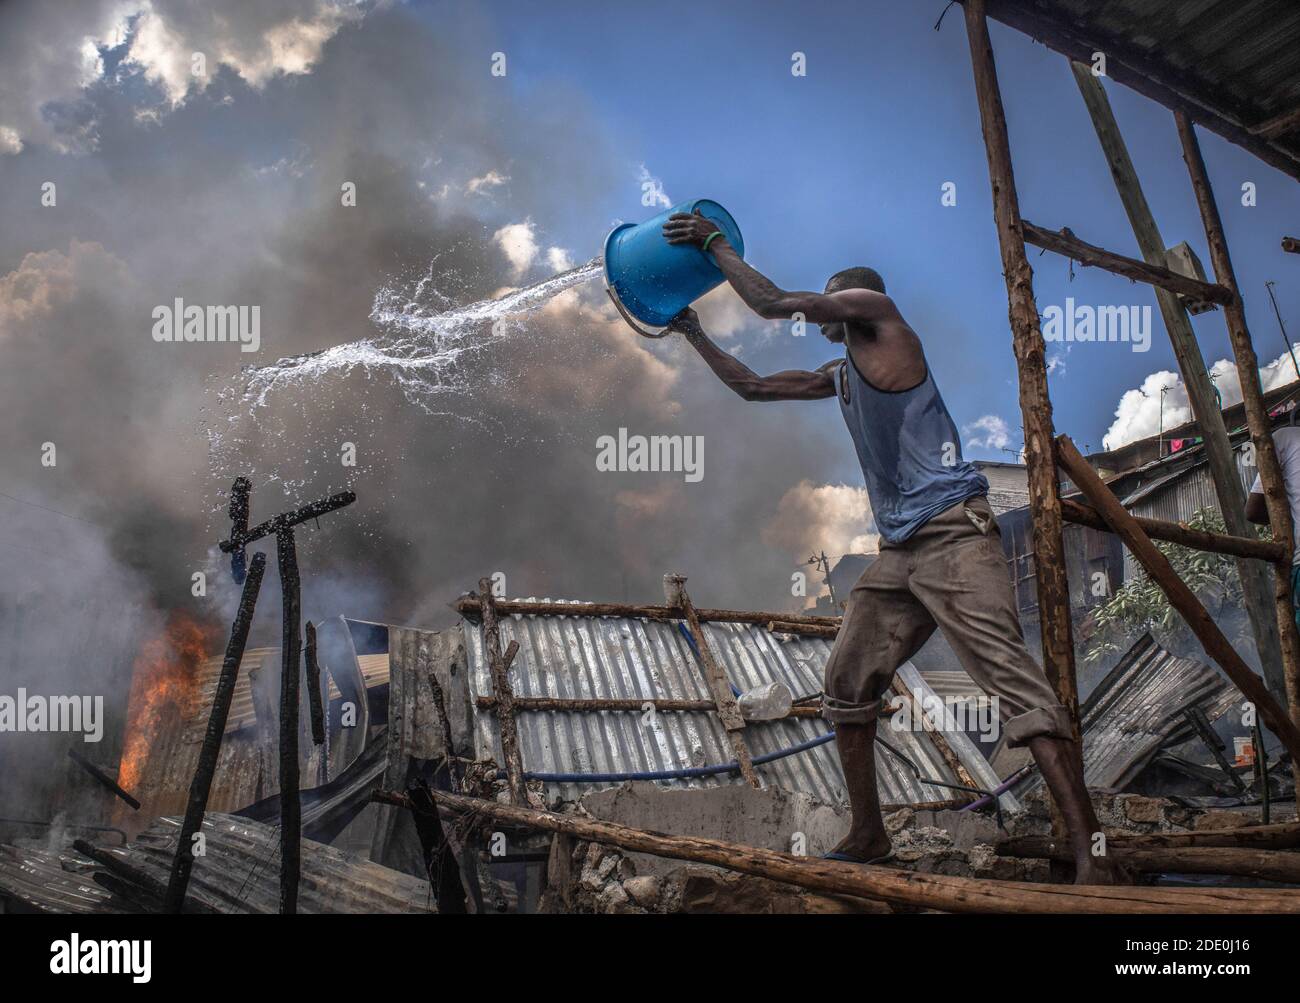 Bewohner aus dem Gebiet Kibera Soweto werden gesehen, wie sie mit ihren Wassereimern kämpfen, um das Feuer auszulöschen, das sich ausbreitet.tief im Nachbargebiet von Soweto in den Slums von Kibera, Die Bewohner erlebten einen harten verrückten Moment, nachdem eine Feuerbelagerung durch einen illegalen Stromanschluss dreißig Häuser niederschürte und die meisten Bewohner obdachlos wurden. Die meisten Einheimischen schlossen sich den Händen an, um das Feuer zu löschen, aber leider konnte nichts gerettet werden, aber es gab keine Menschenleben in der Situation. Stockfoto